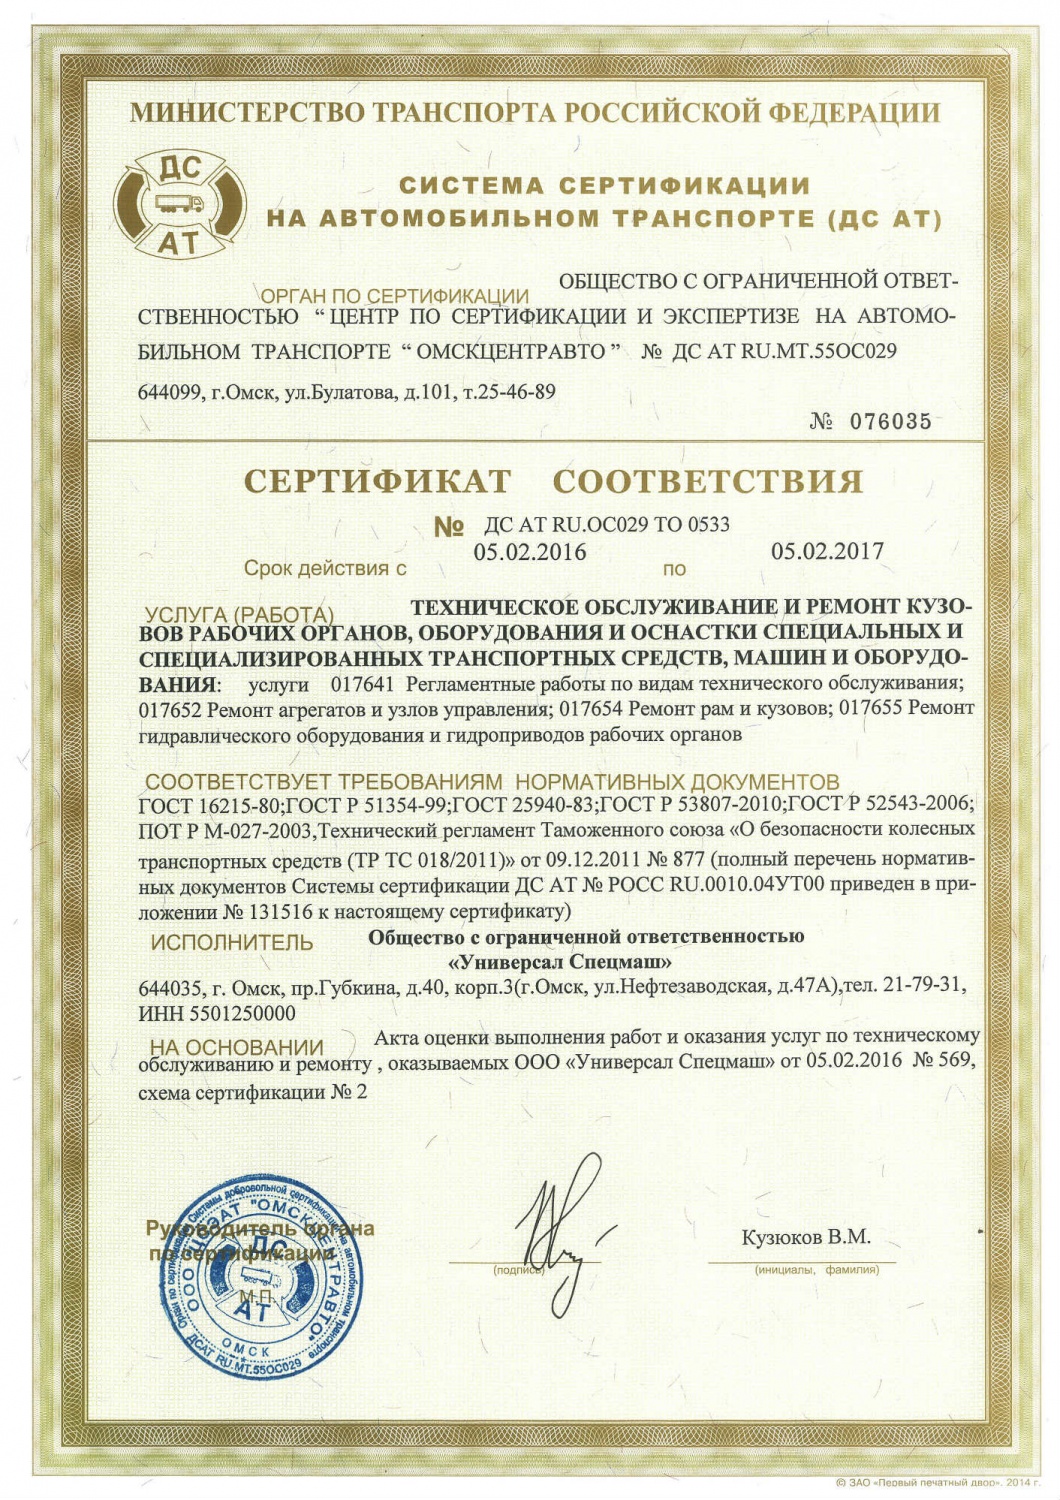 Сертификат соответствия ООО "УниверсалСпецмаш"